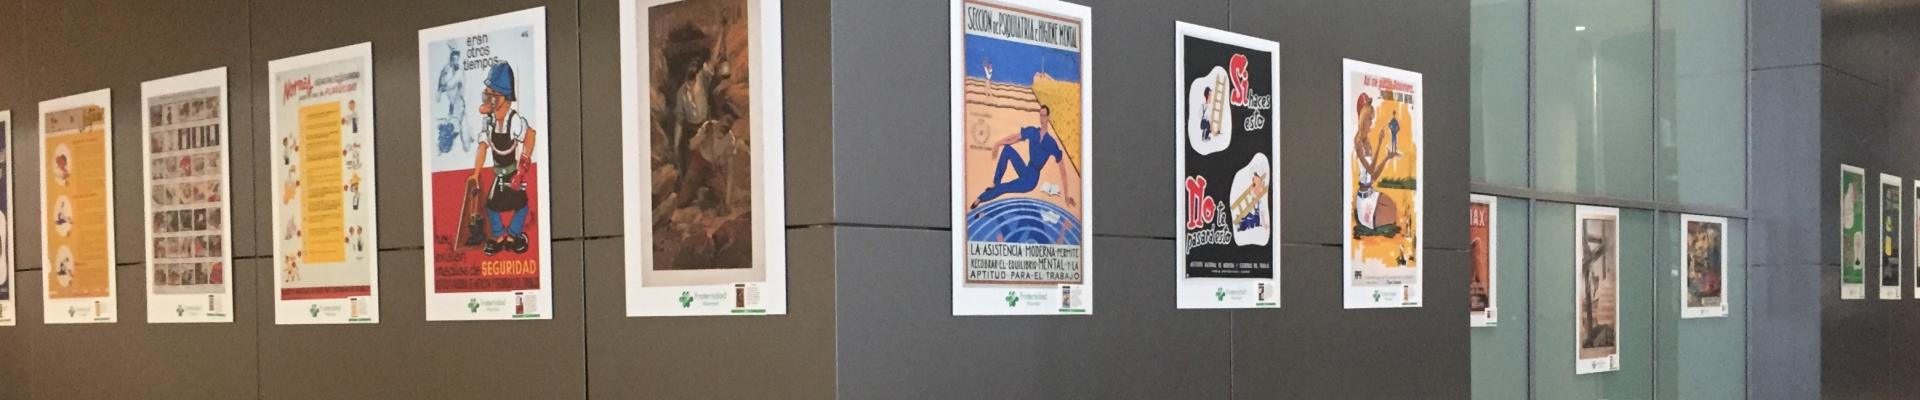 Fraternidad-Muprespa realiza una exposición de carteles de prevención del S. XX en el aeropuerto de Málaga – Costa del Sol